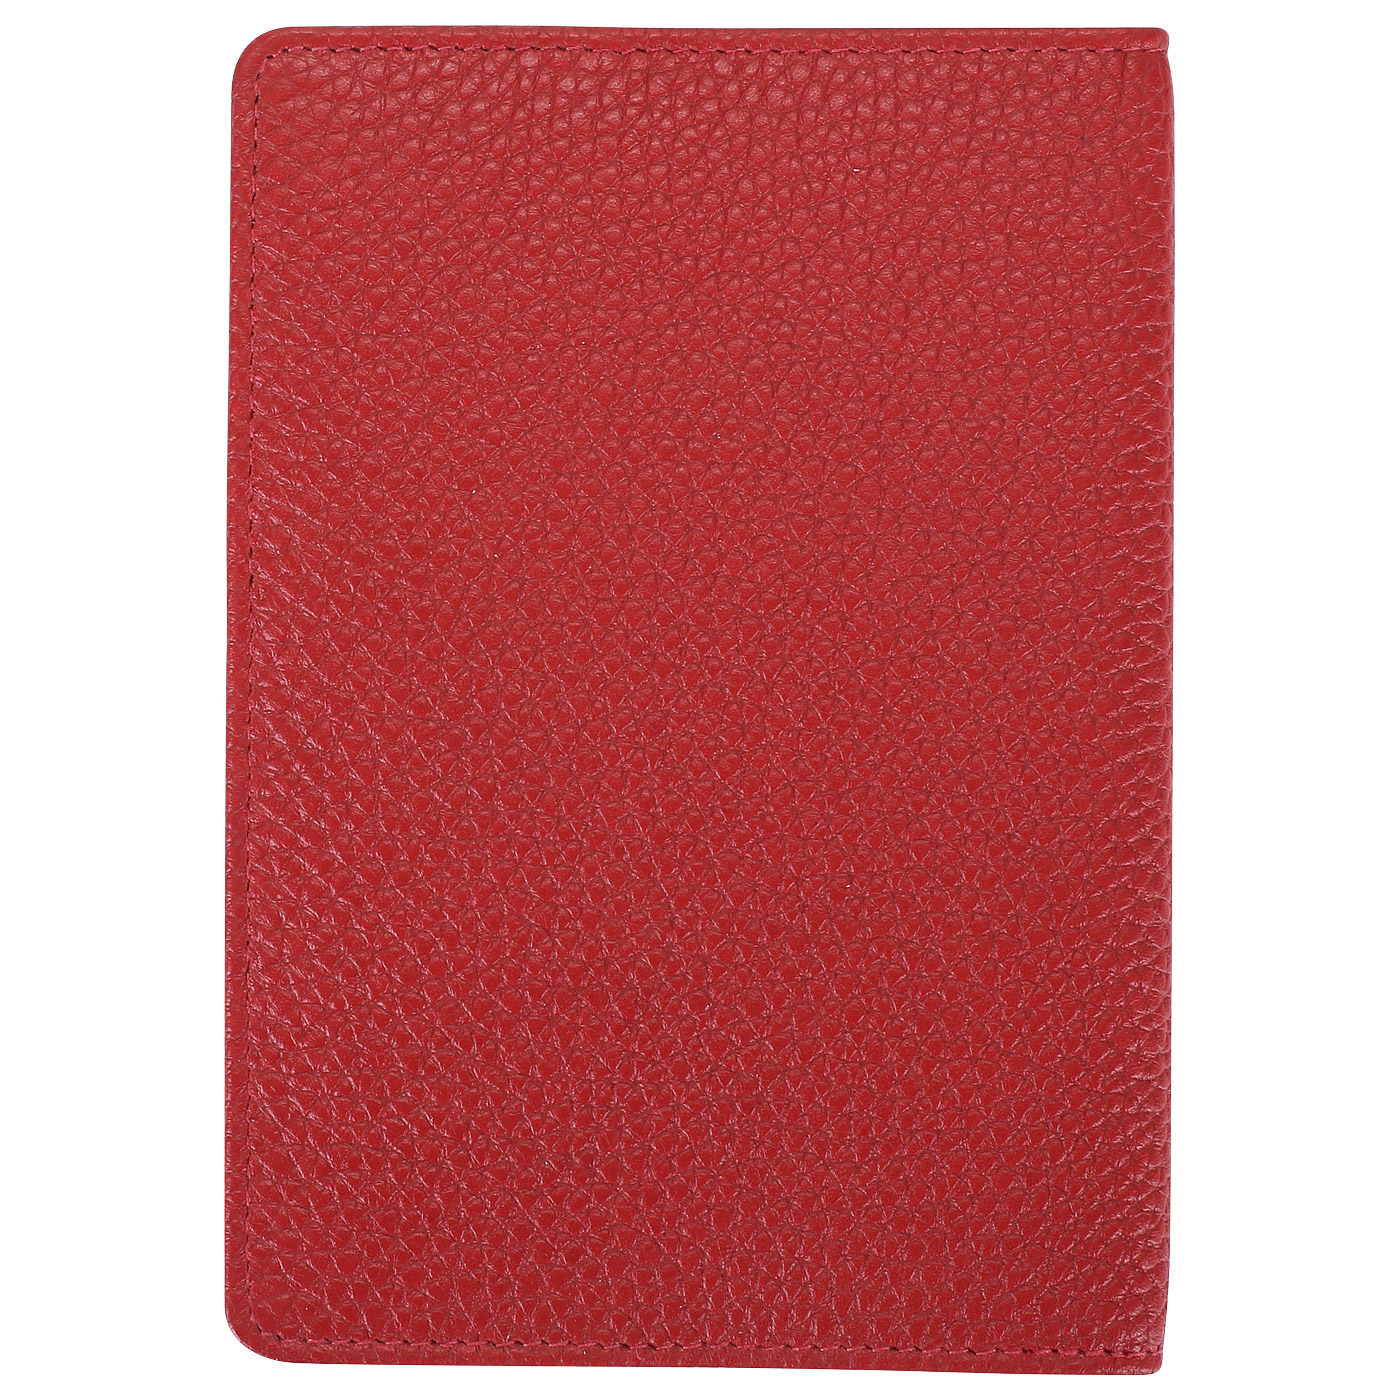 Красная обложка для паспорта Braun Buffel Asti